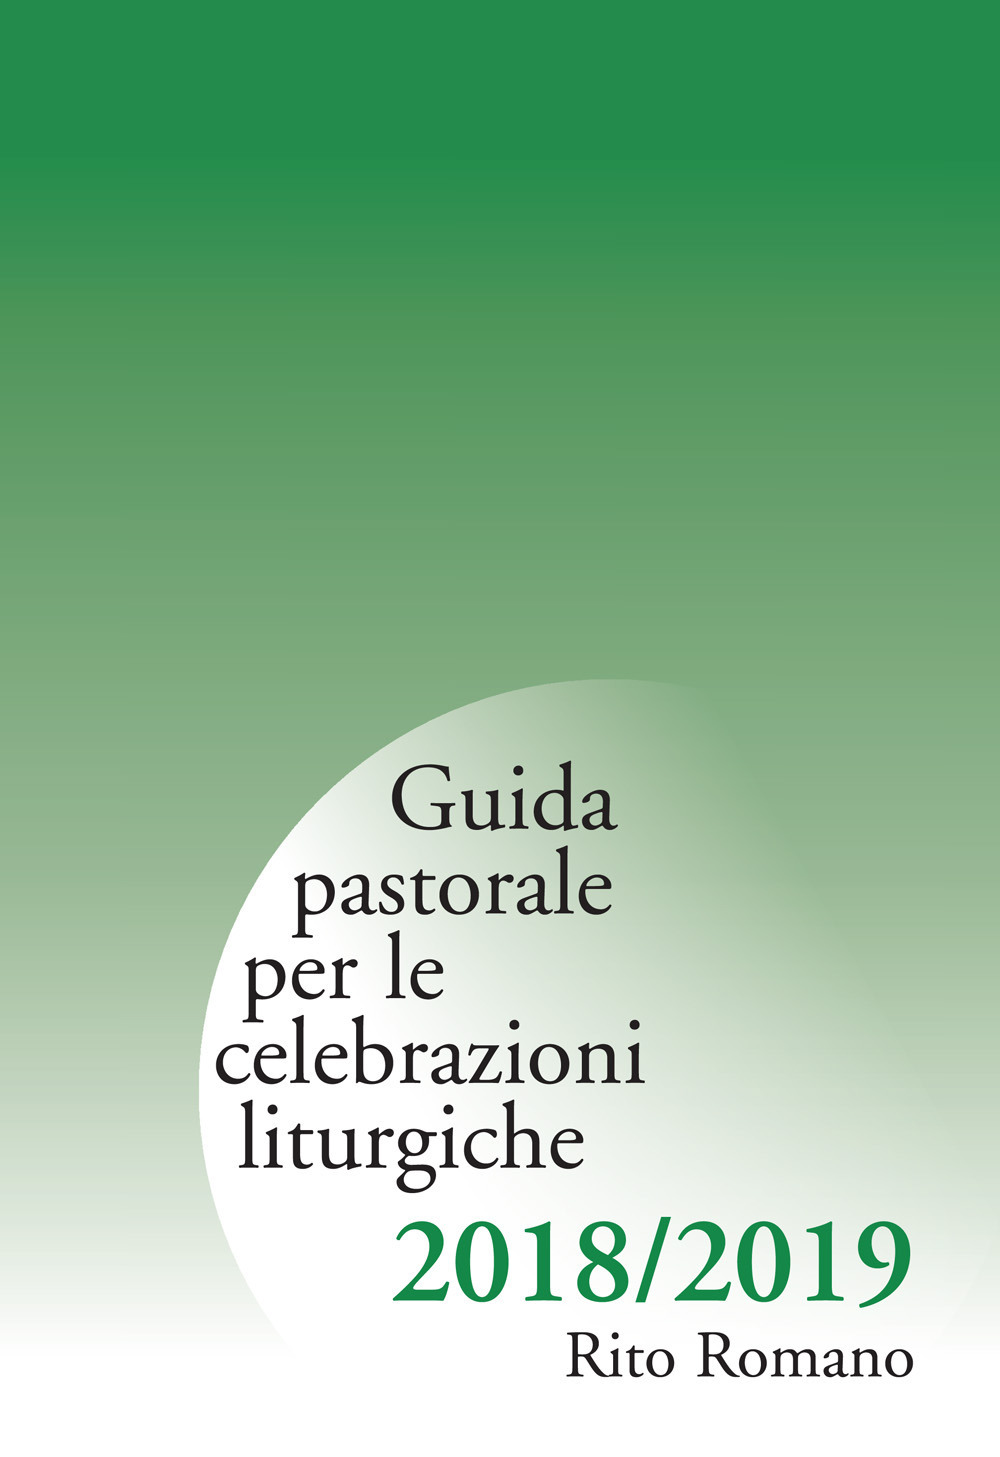 Guida pastorale per le celebrazioni liturgiche. Rito romano 2018-2019